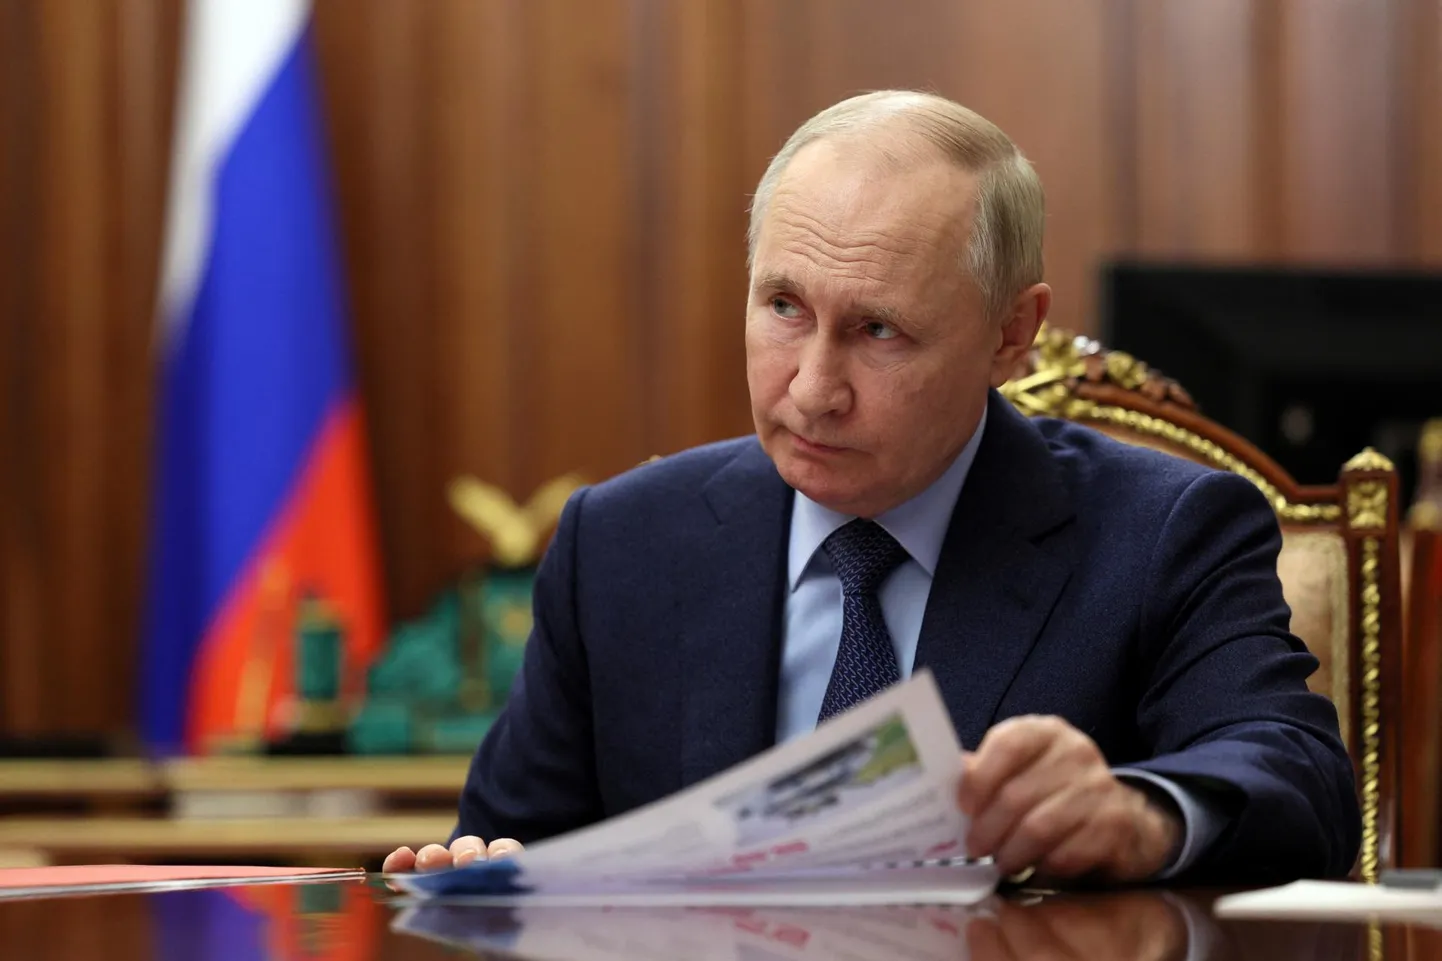 Venemaa president Vladimir Putin kinnitas hiljuti, et tema eesmärgid Ukrainas ei ole muutunud.